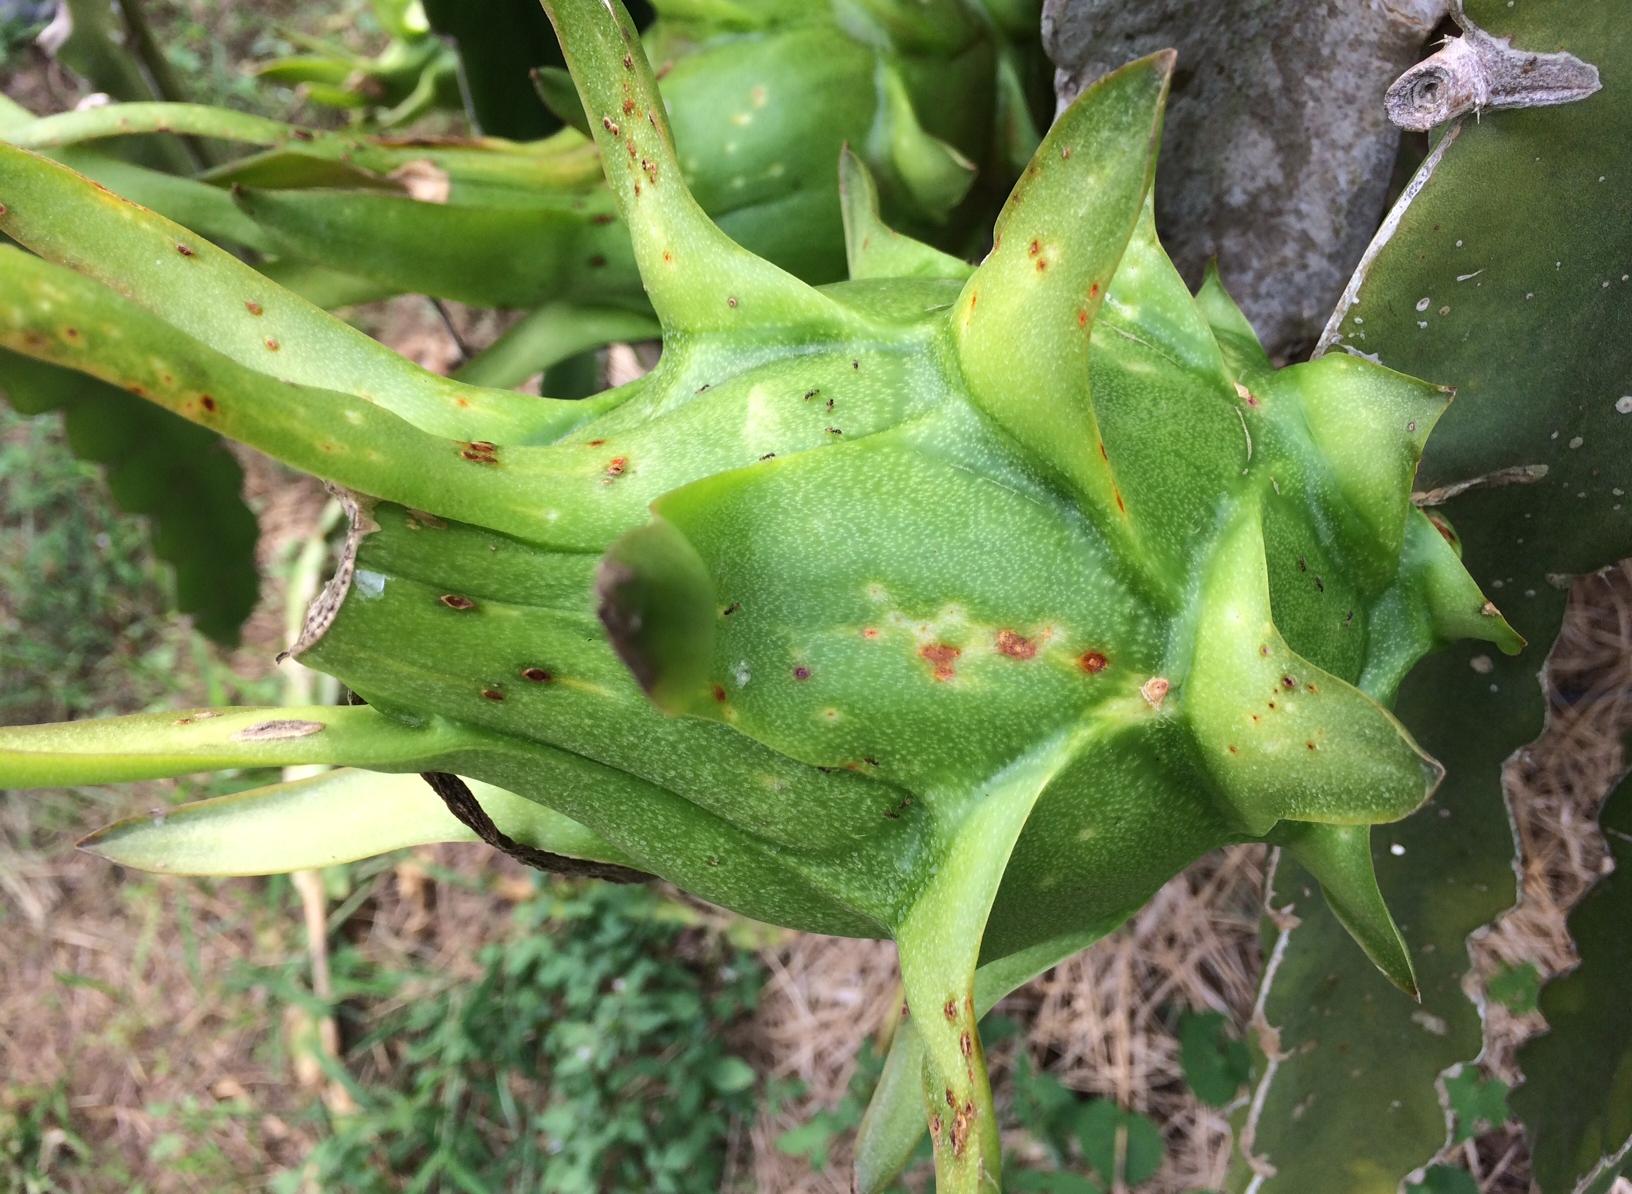 Le fruit du dragon avec les taches symbolisant la maladie (Photo : A. Richel)